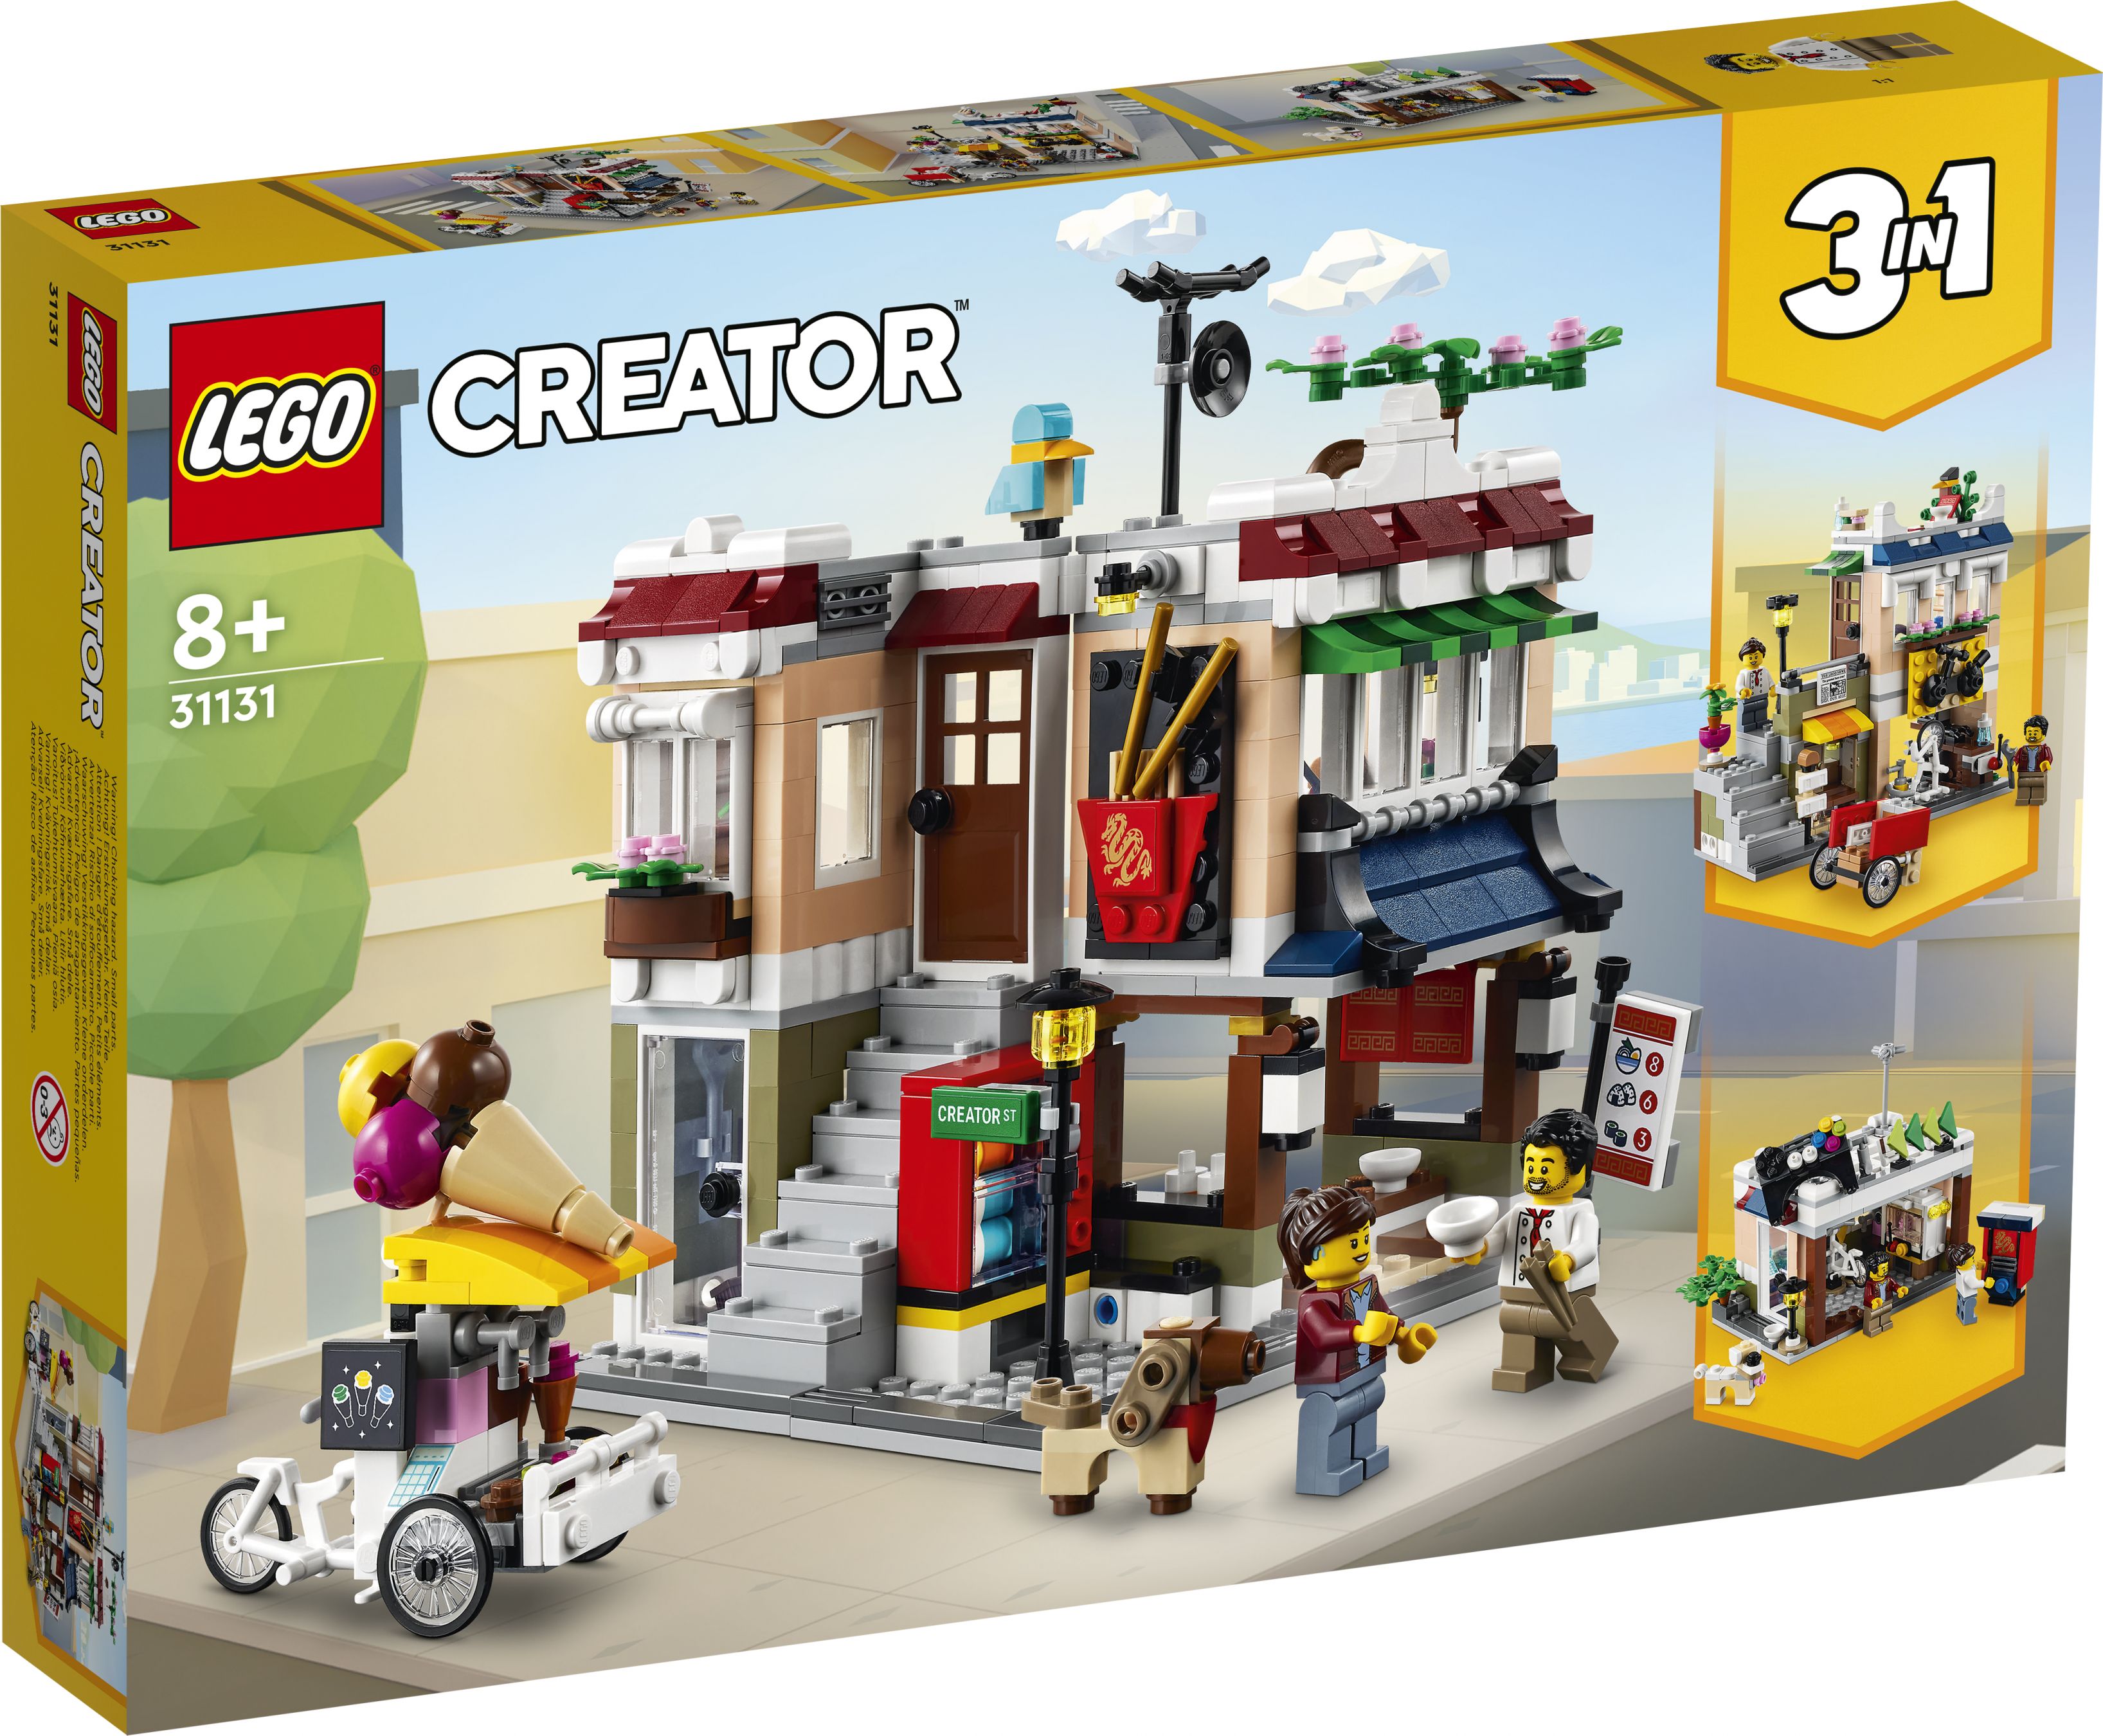 LEGO Creator 31131 Nudelladen LEGO_31131_Box1_v29.jpg